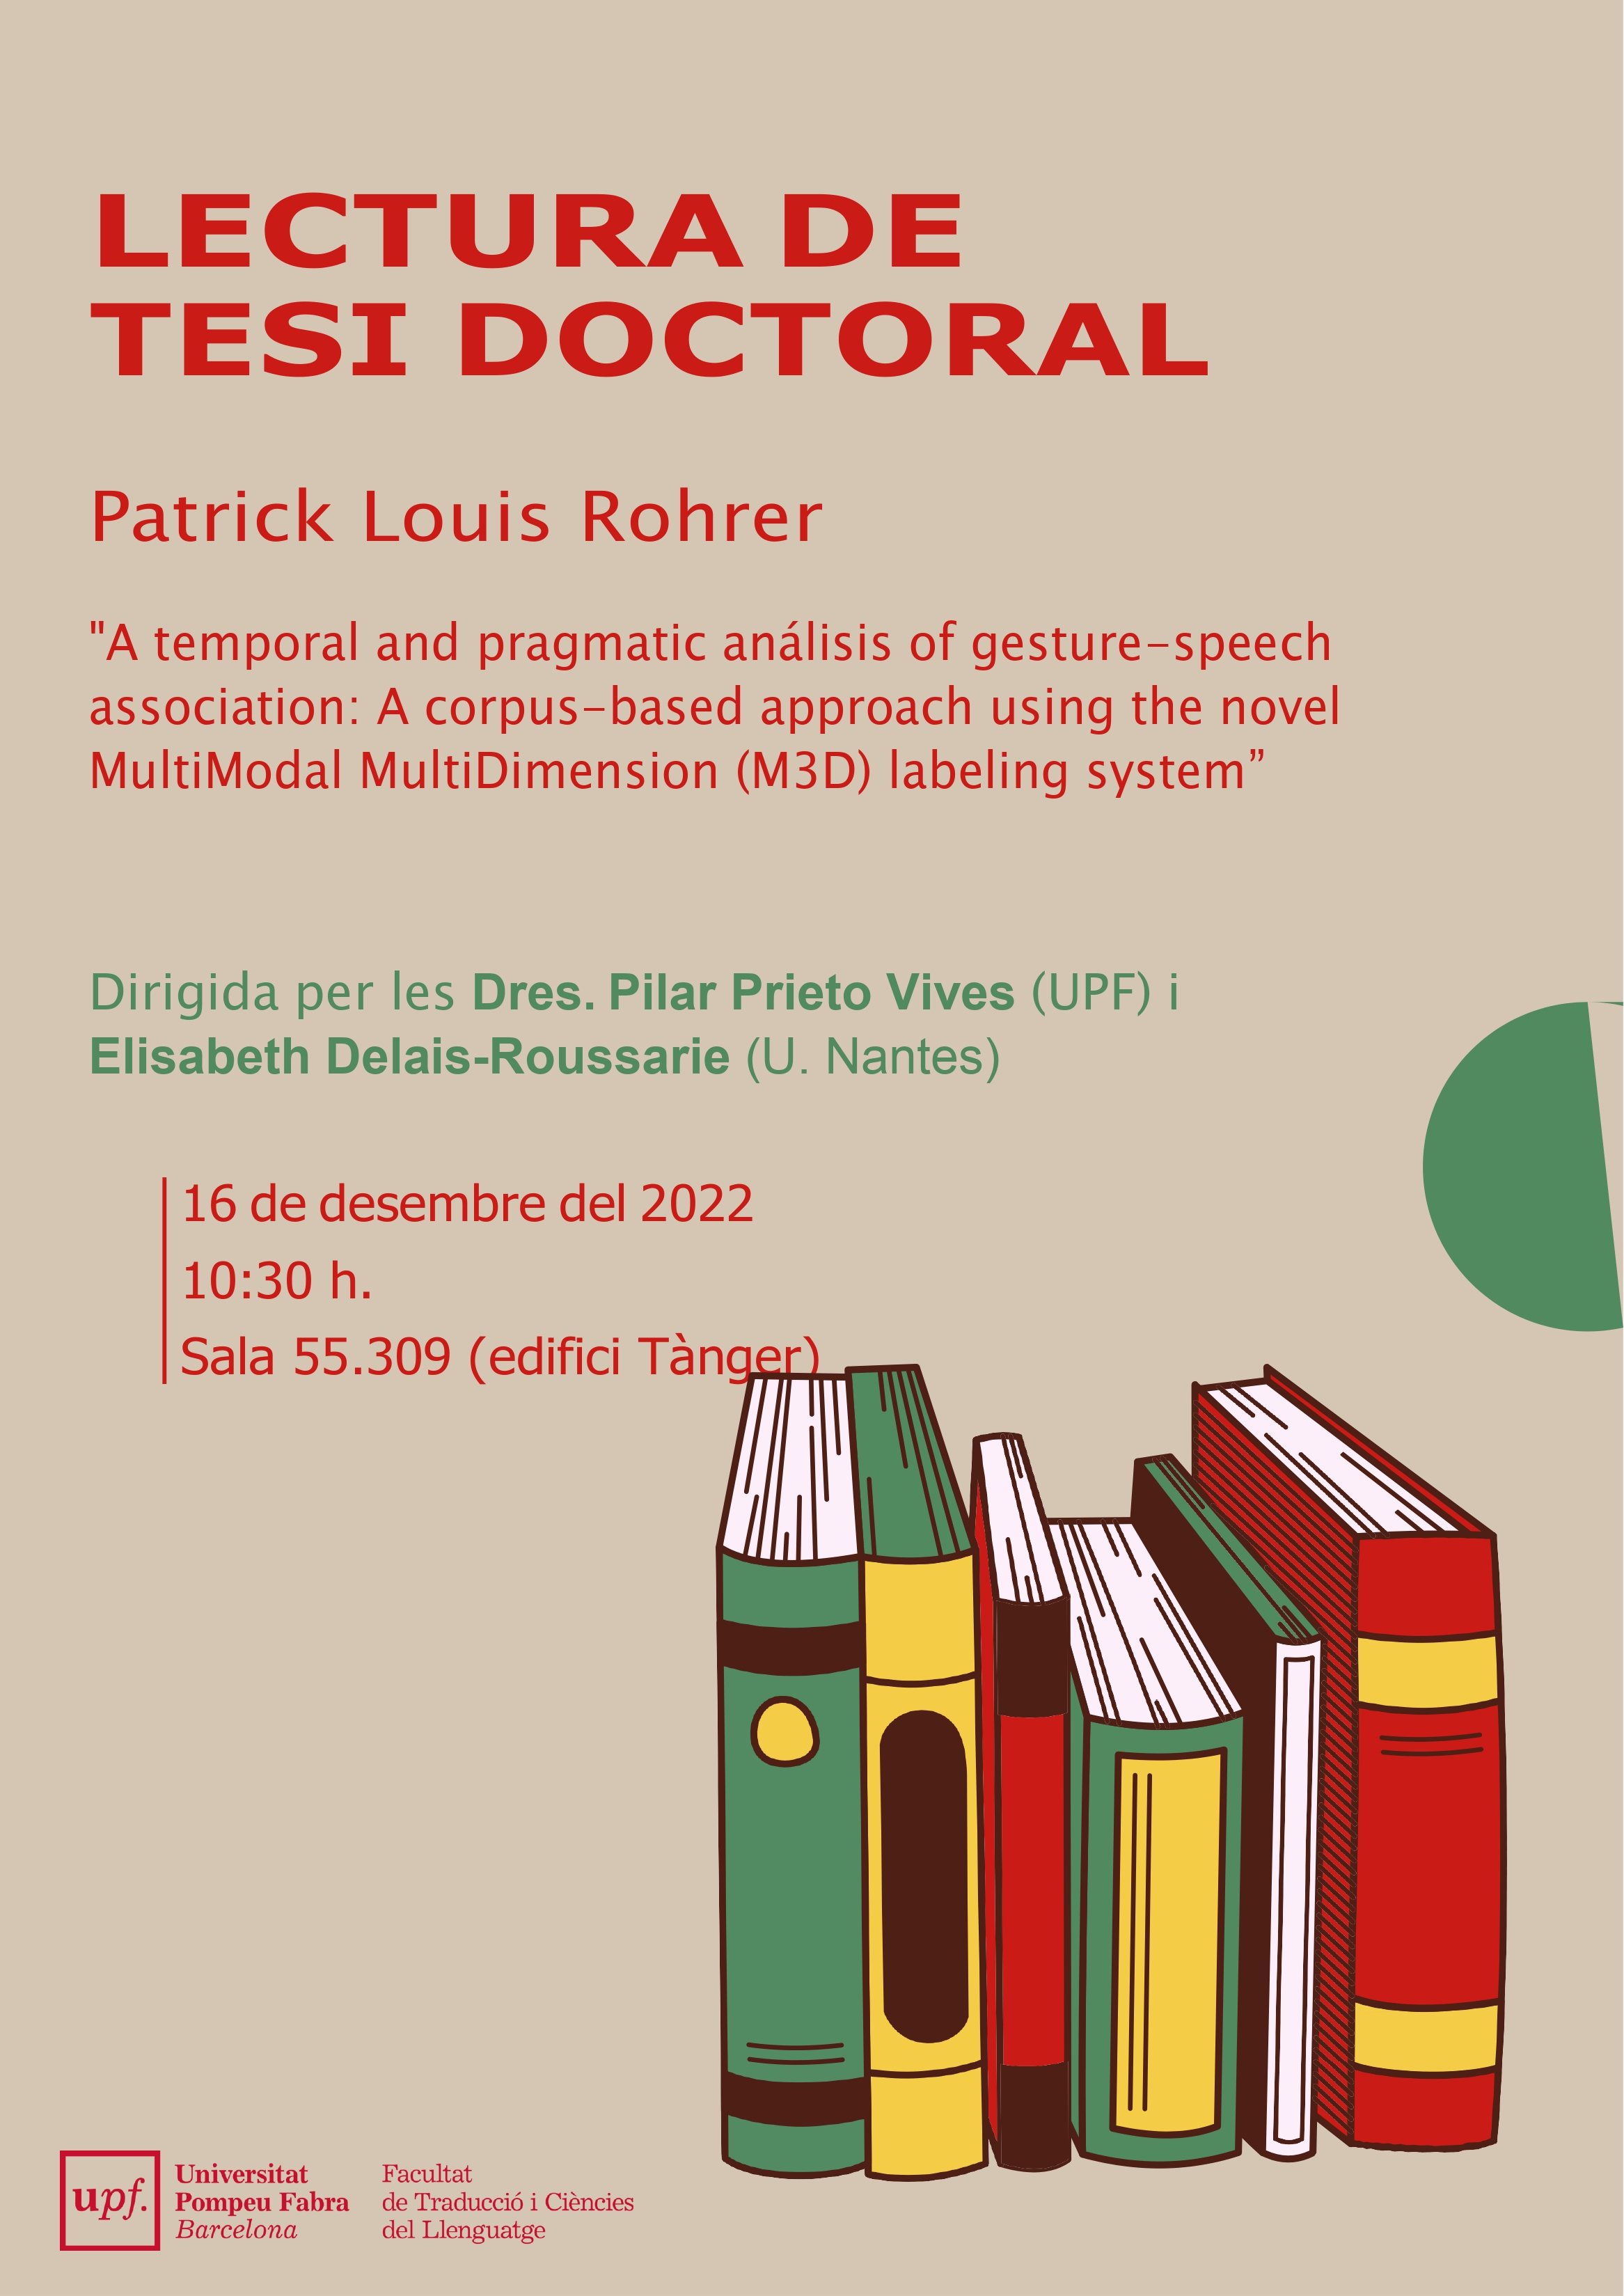 16/12/2022 Lectura de la tesi doctoral de Patrick Louis Rohrer, a les 10.30 hores